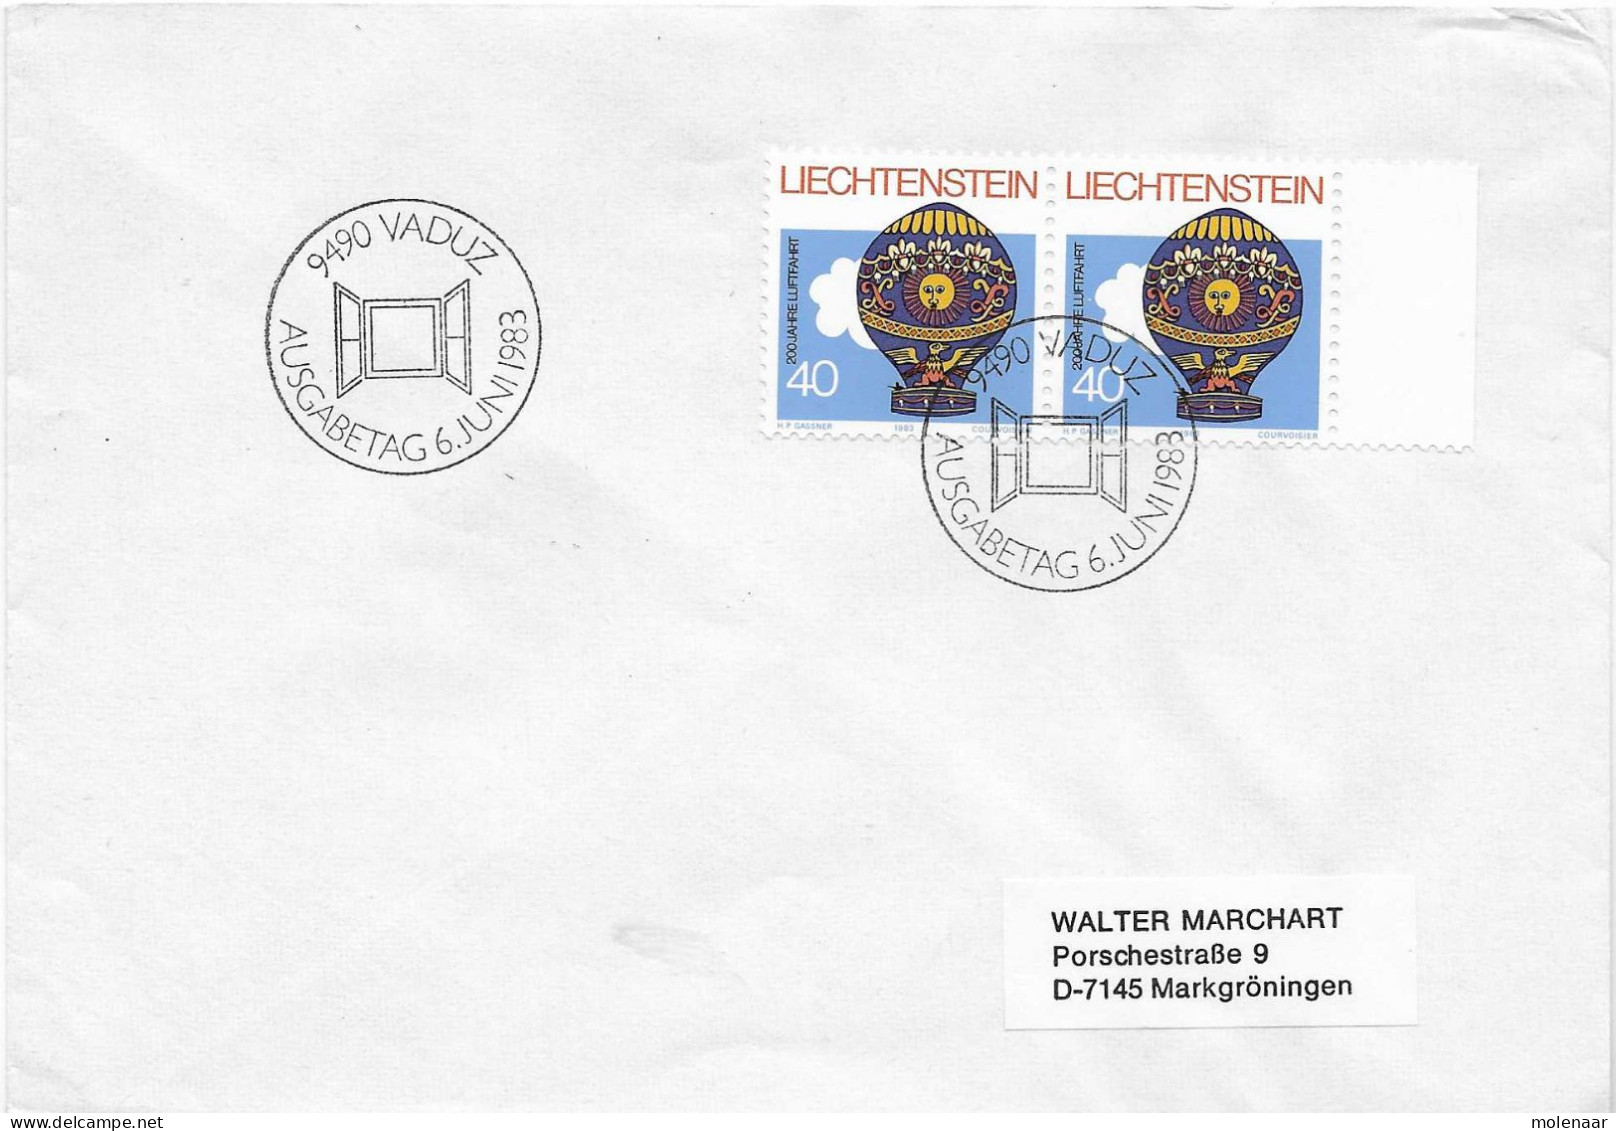 Postzegels > Europa > Liechtenstein > 1981-90 > Brief Met 2x No. 829 (17585) - Lettres & Documents